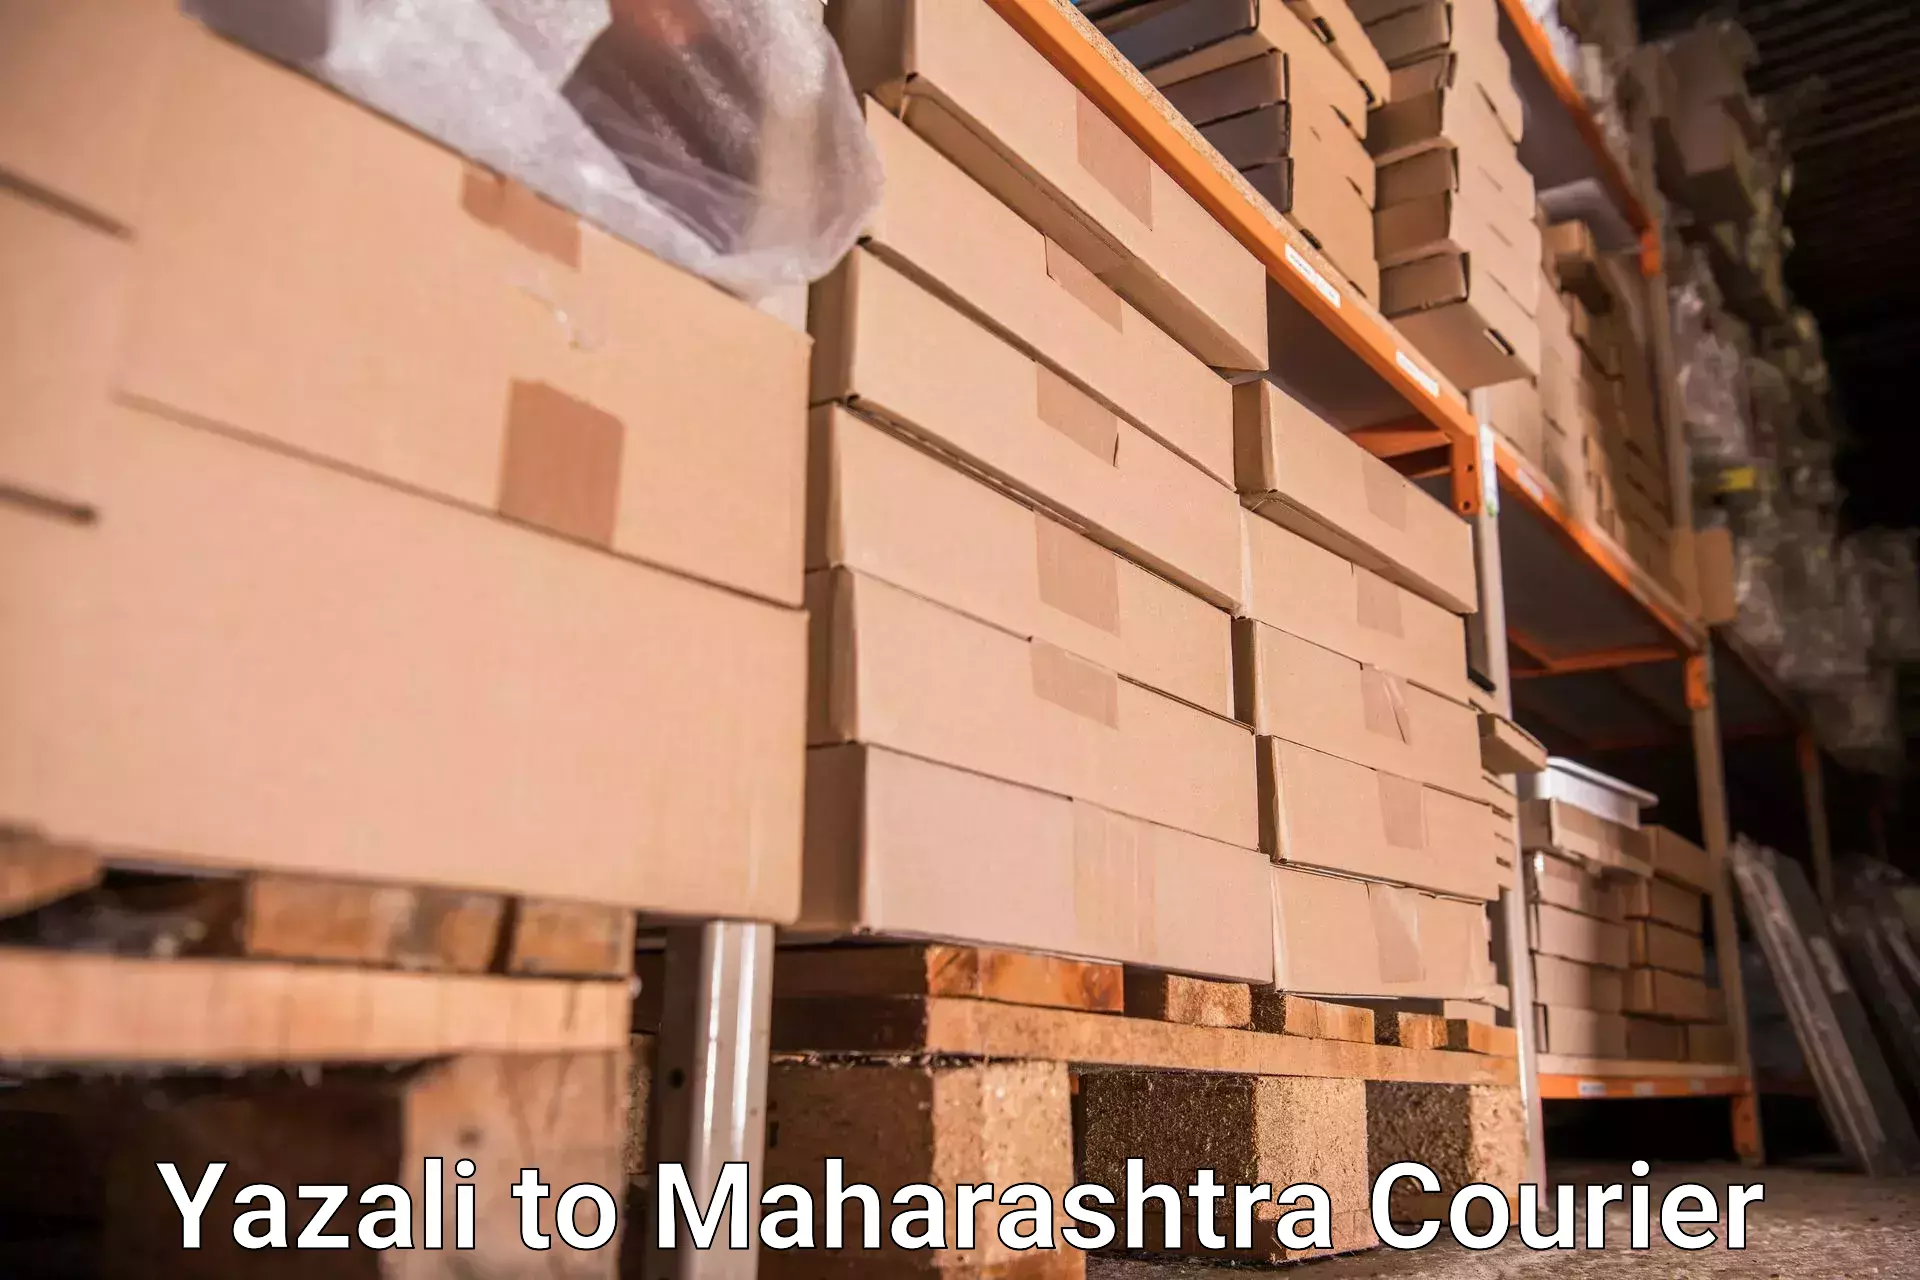 Hassle-free luggage shipping Yazali to Navi Mumbai